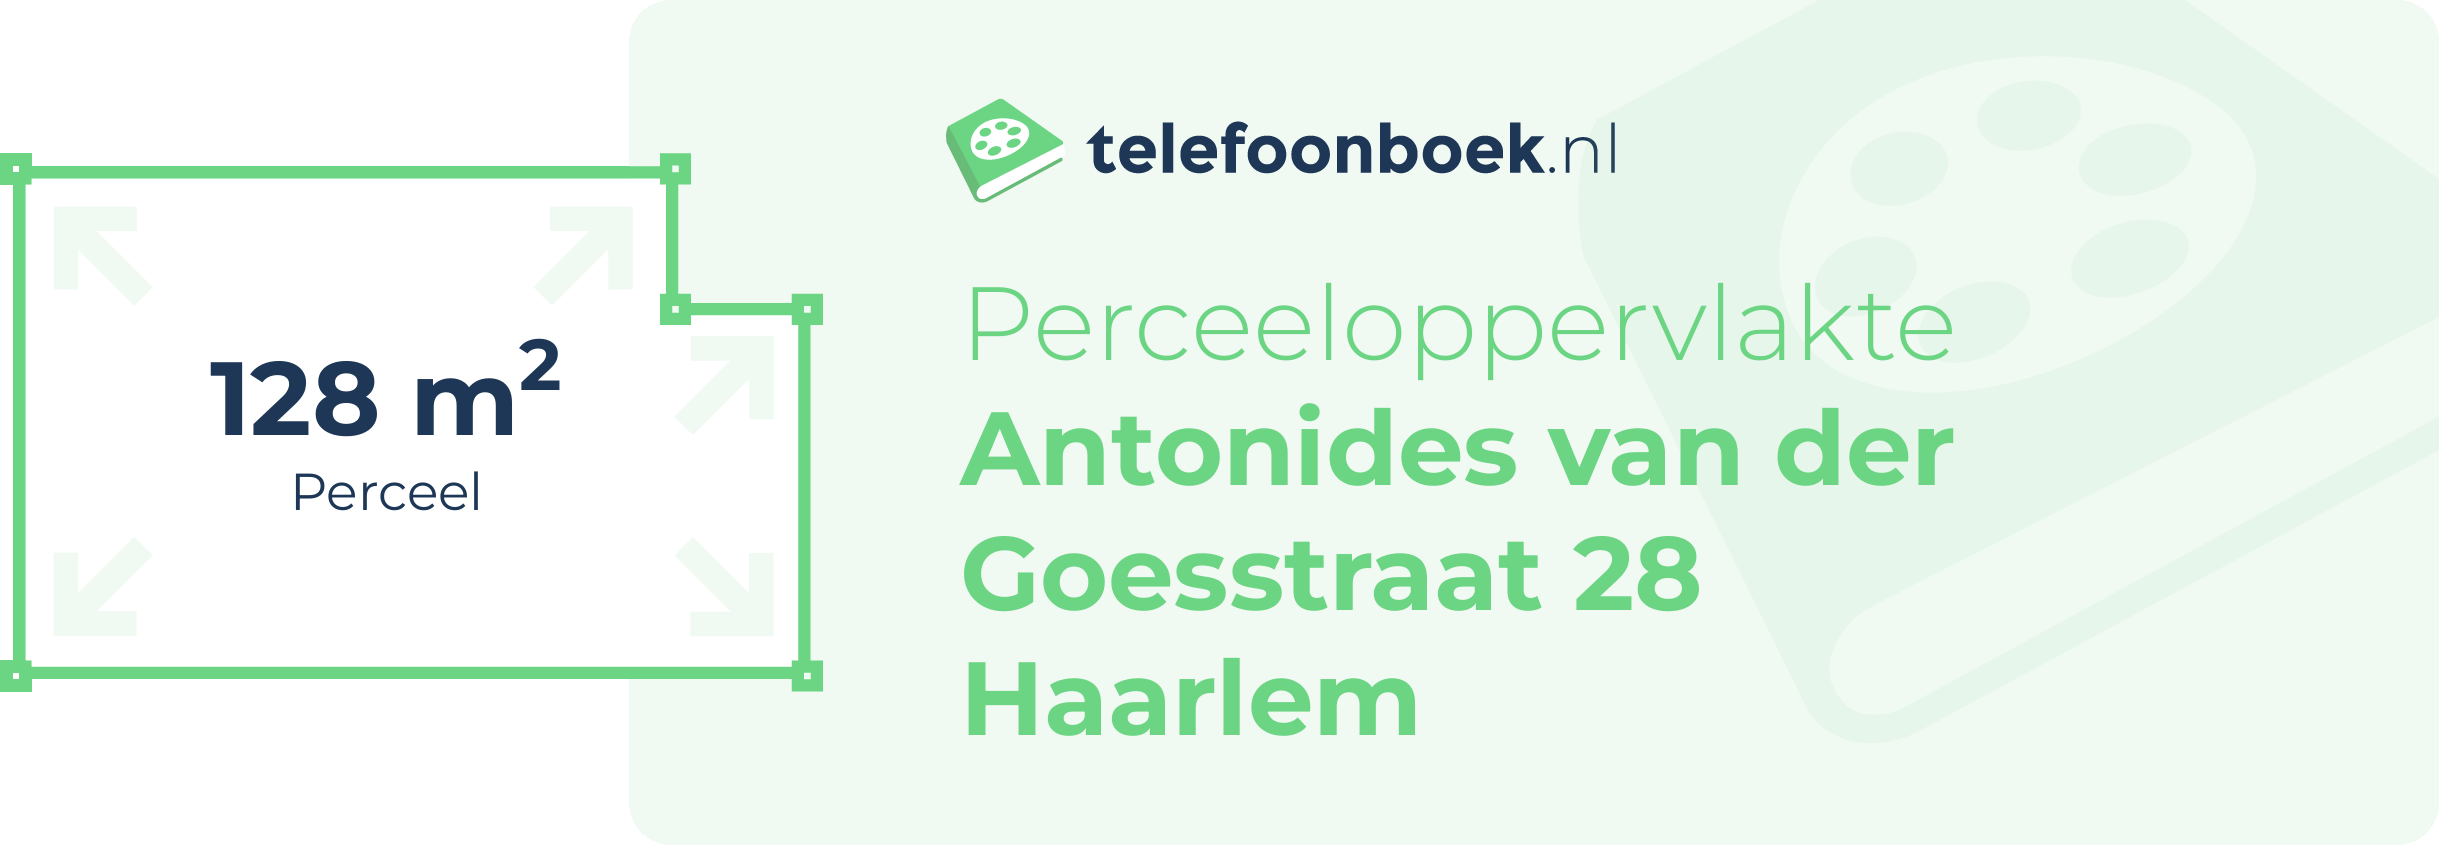 Perceeloppervlakte Antonides Van Der Goesstraat 28 Haarlem